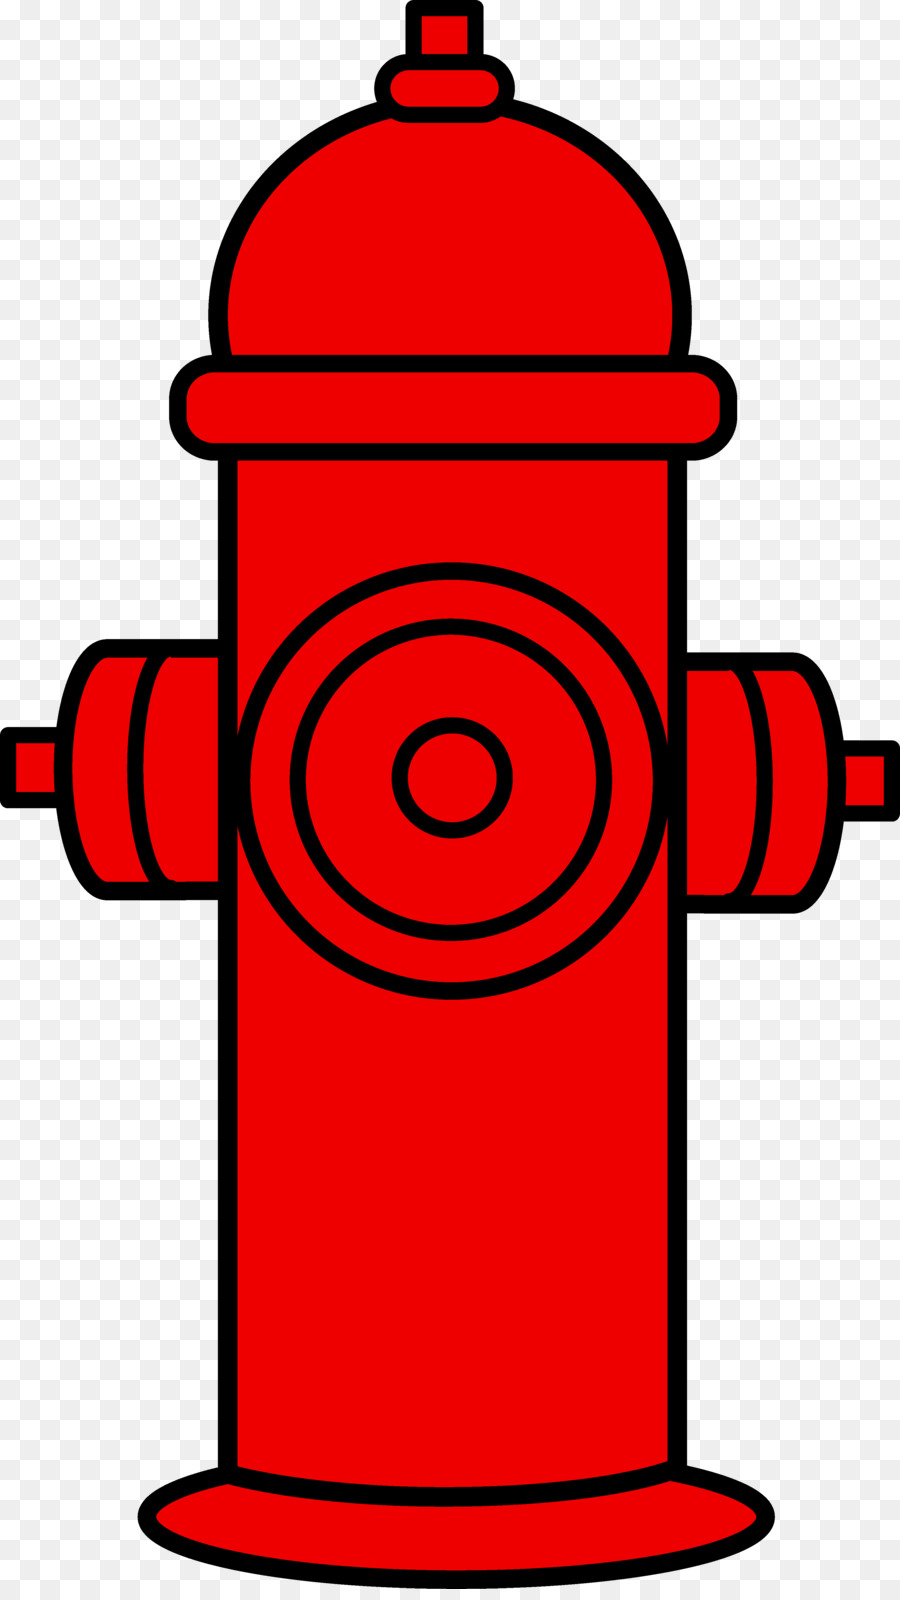 Fire Hydrant Images Clip Art gloryhole heilbronn